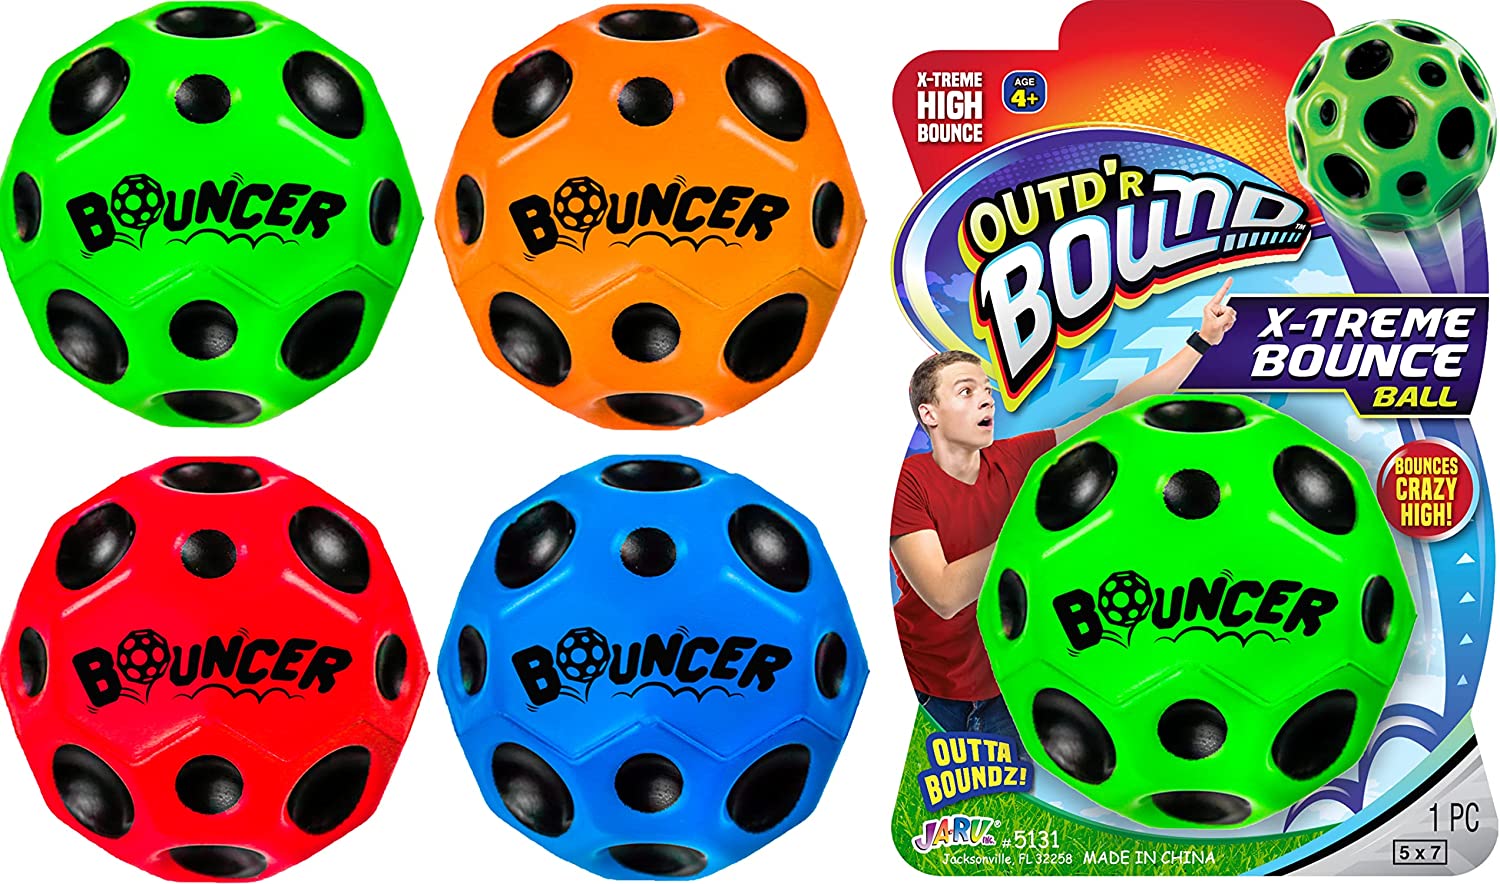 JA-RU Xtreme Bounce Ball